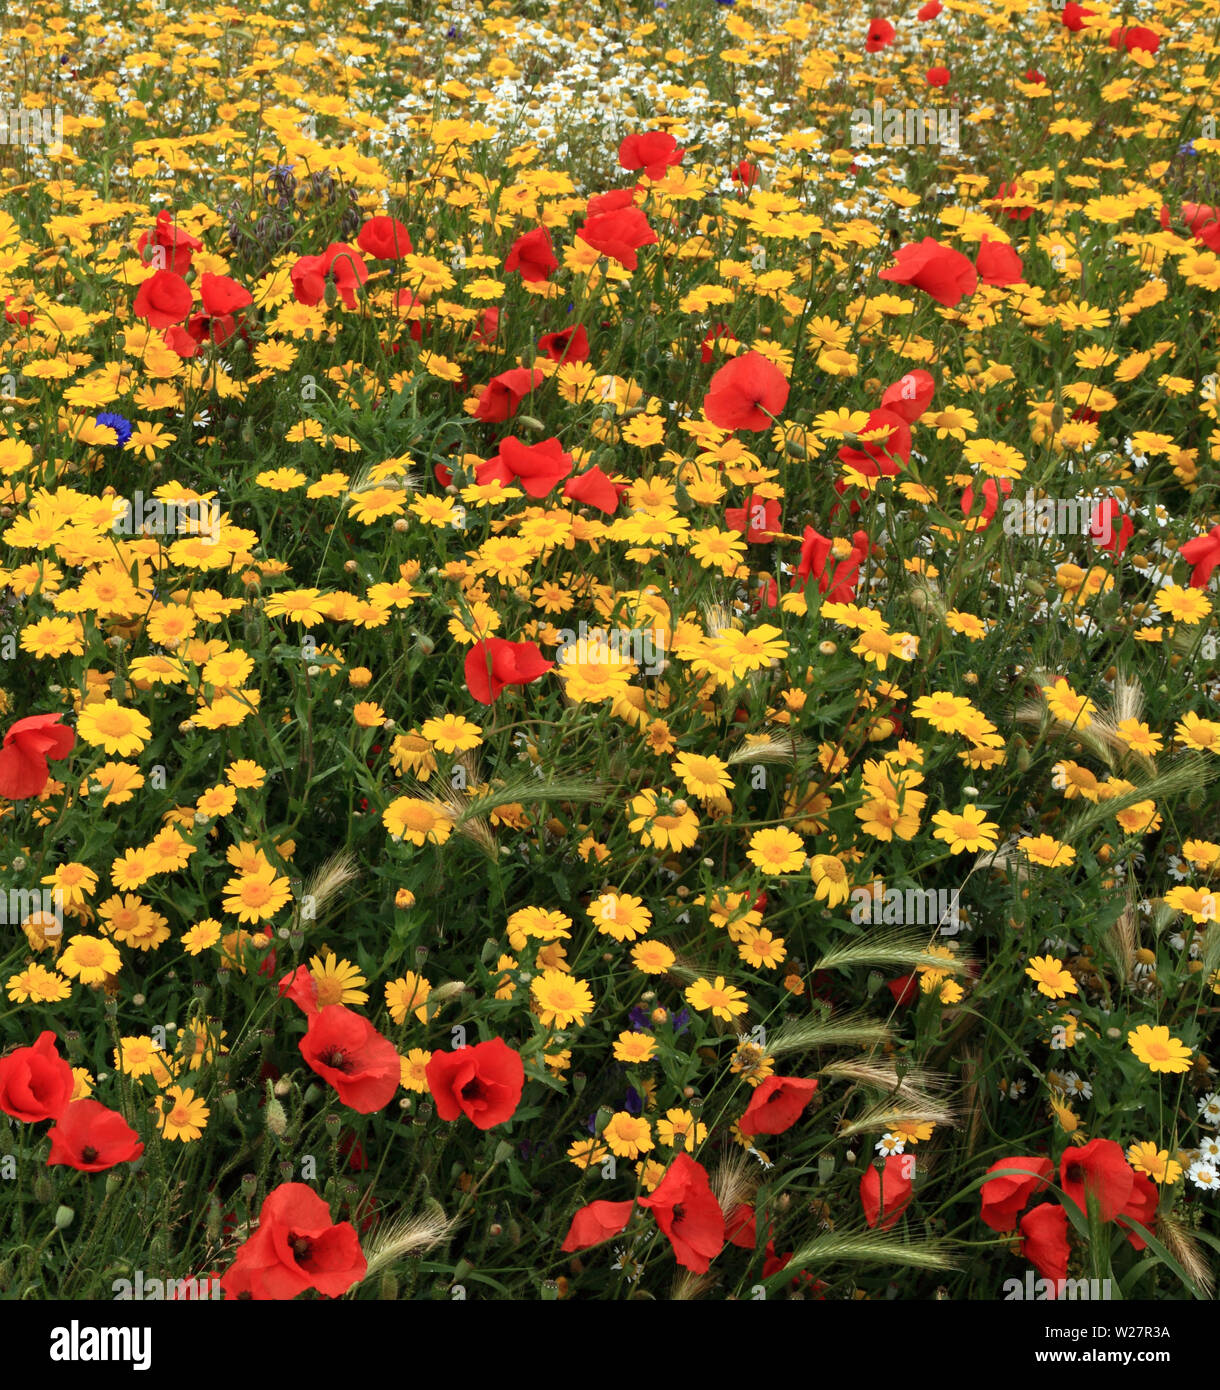 Wild flower garden, field poppy, poppies, corn marigold, cornflower, colourful Stock Photo